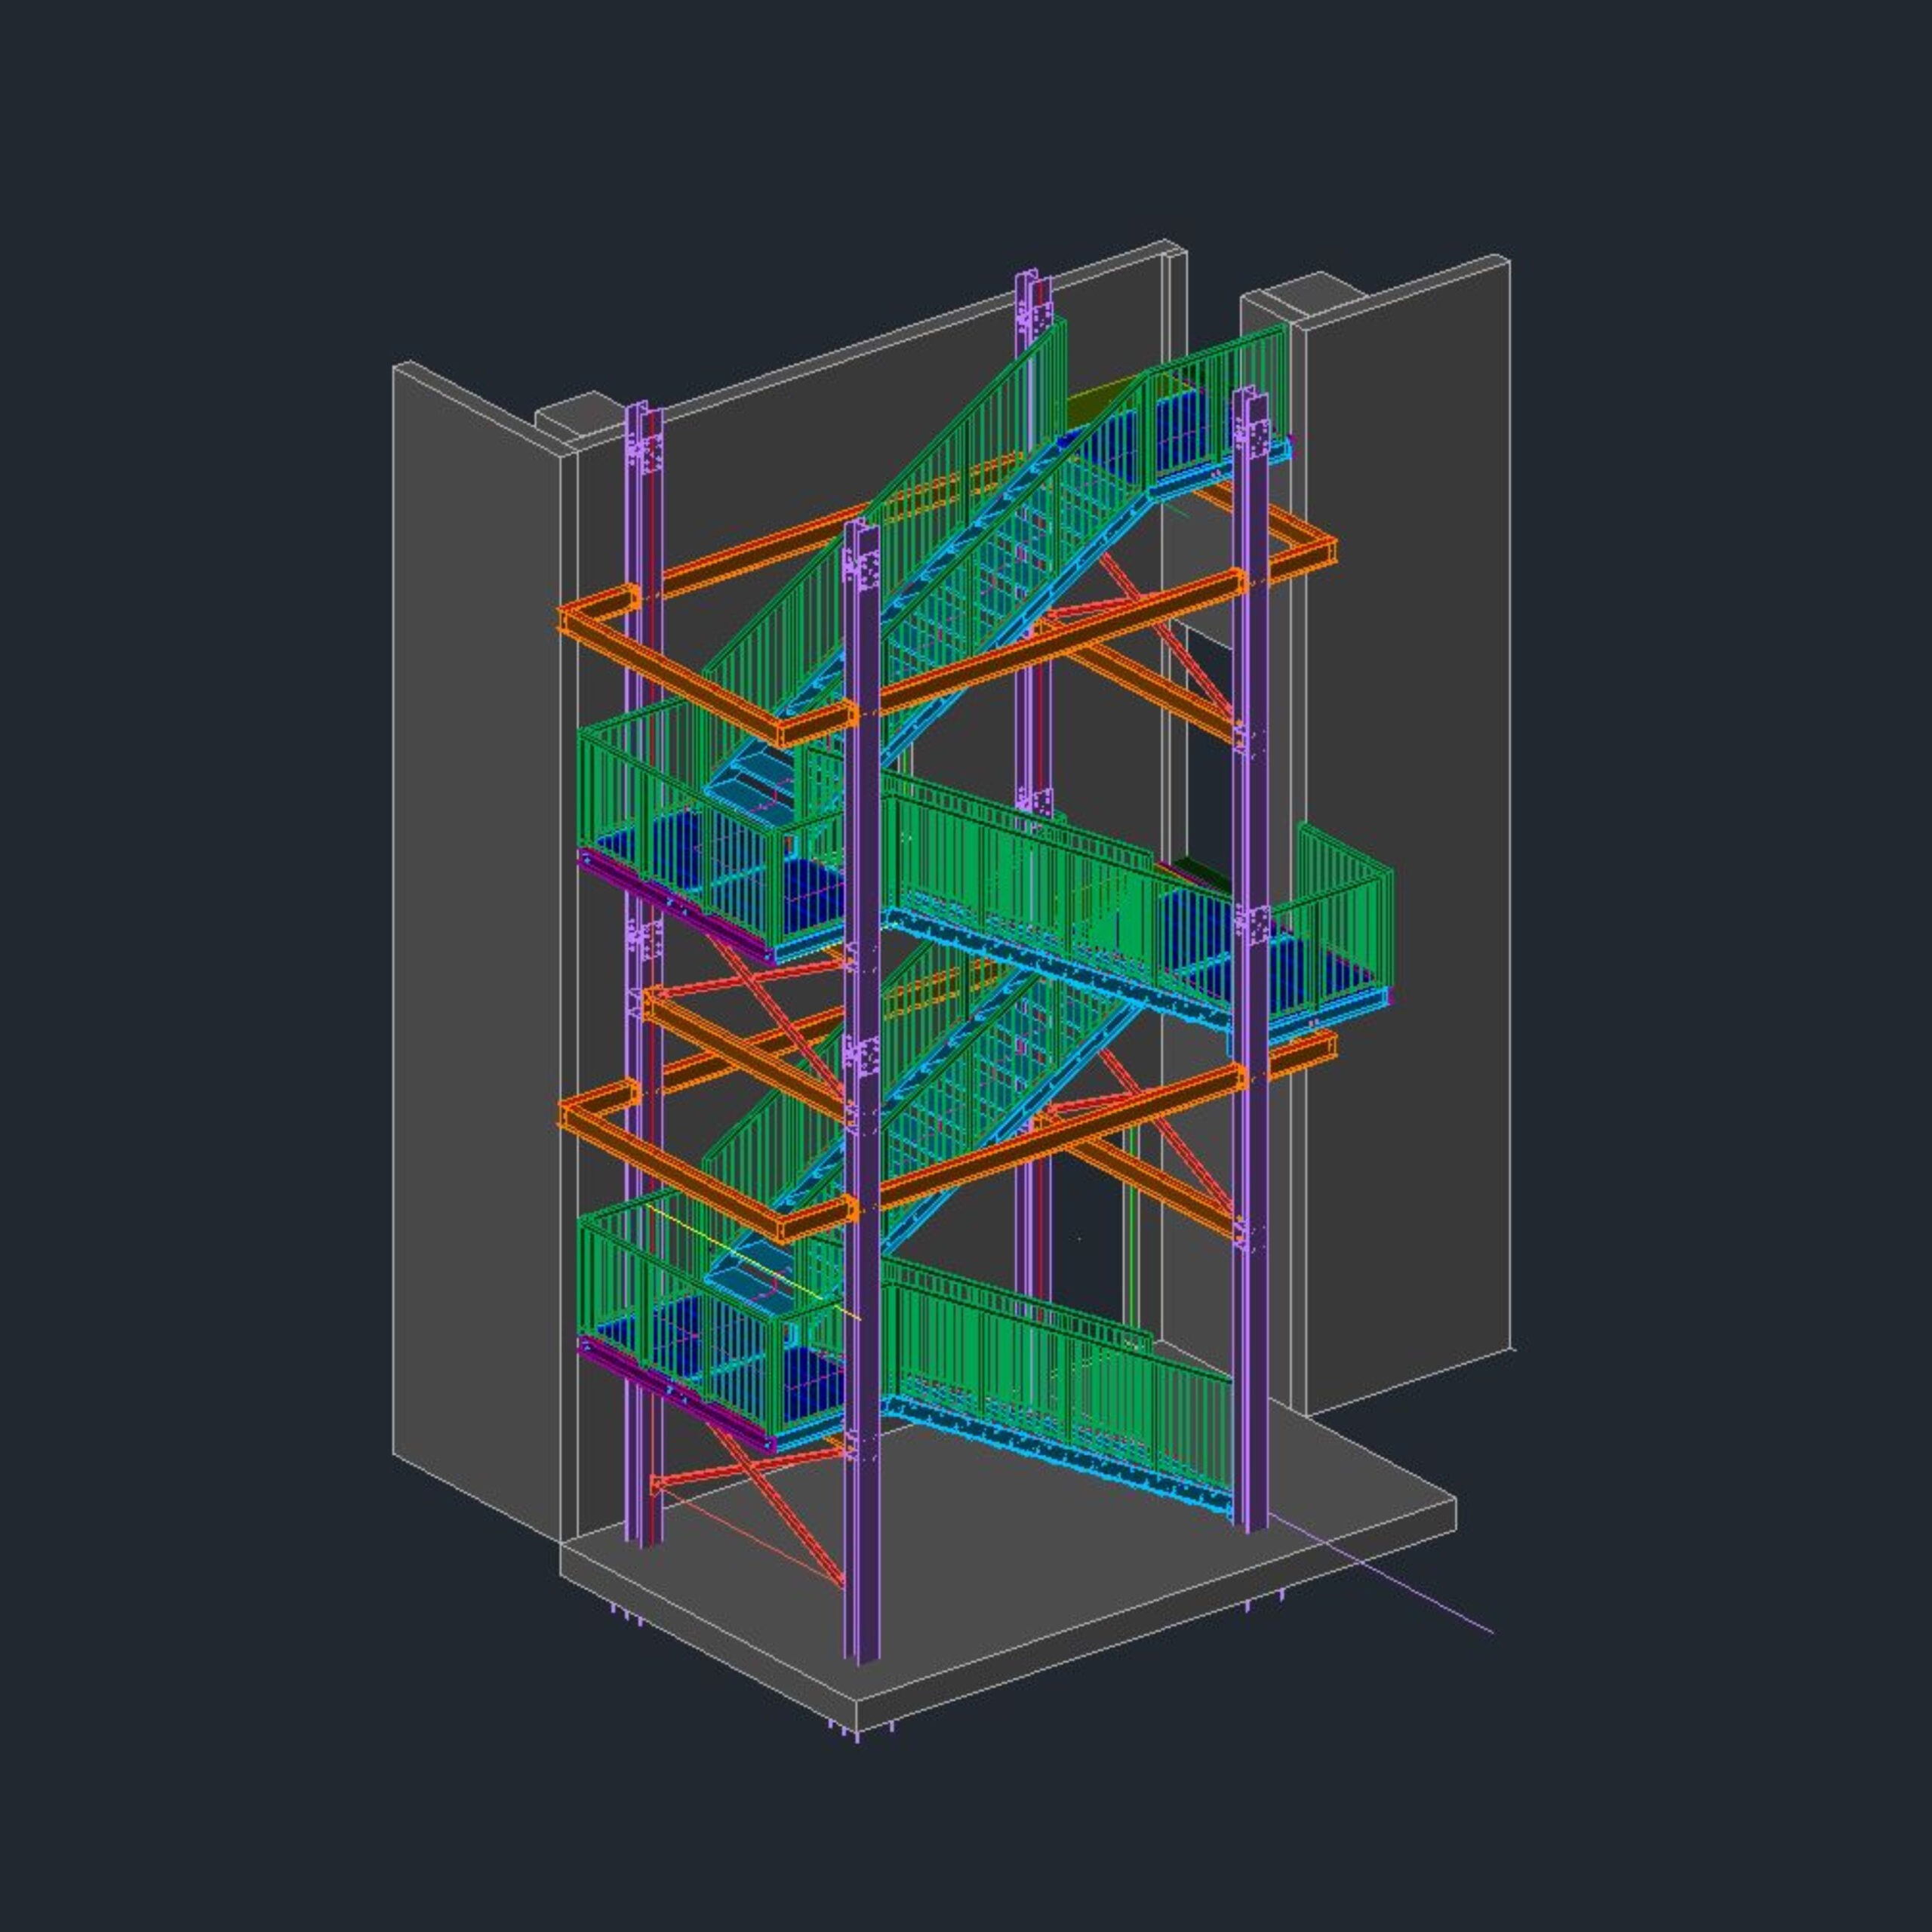 Progetto CAD di una scala per esterno: design moderno e funzionalità integrati per un'architettura all'avanguardia e sicura.